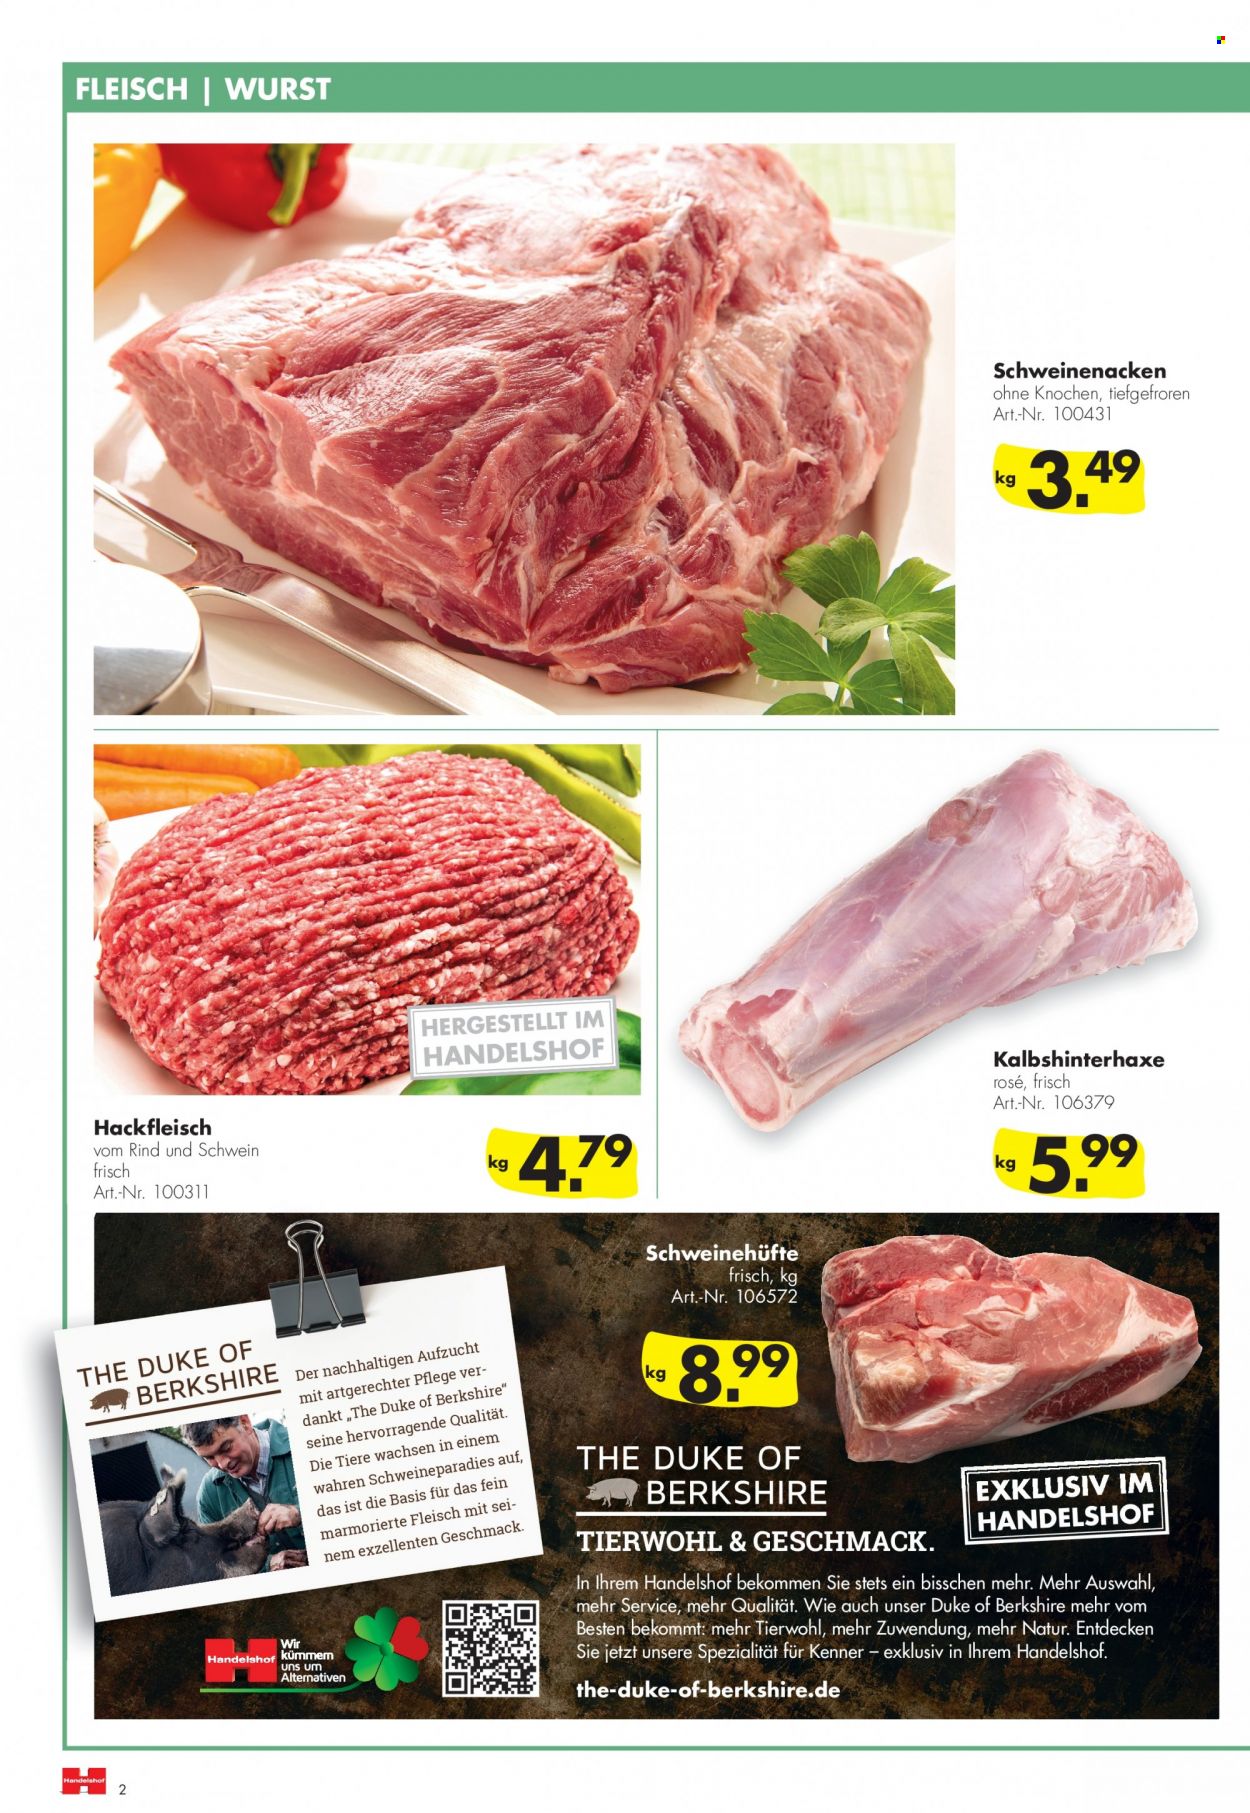 thumbnail - Prospekte Handelshof - 1.10.2021 - 31.10.2021 - Produkte in Aktion - Hackfleisch, Schweinehackfleisch, Schweinefleisch, Schweinenacken. Seite 2.